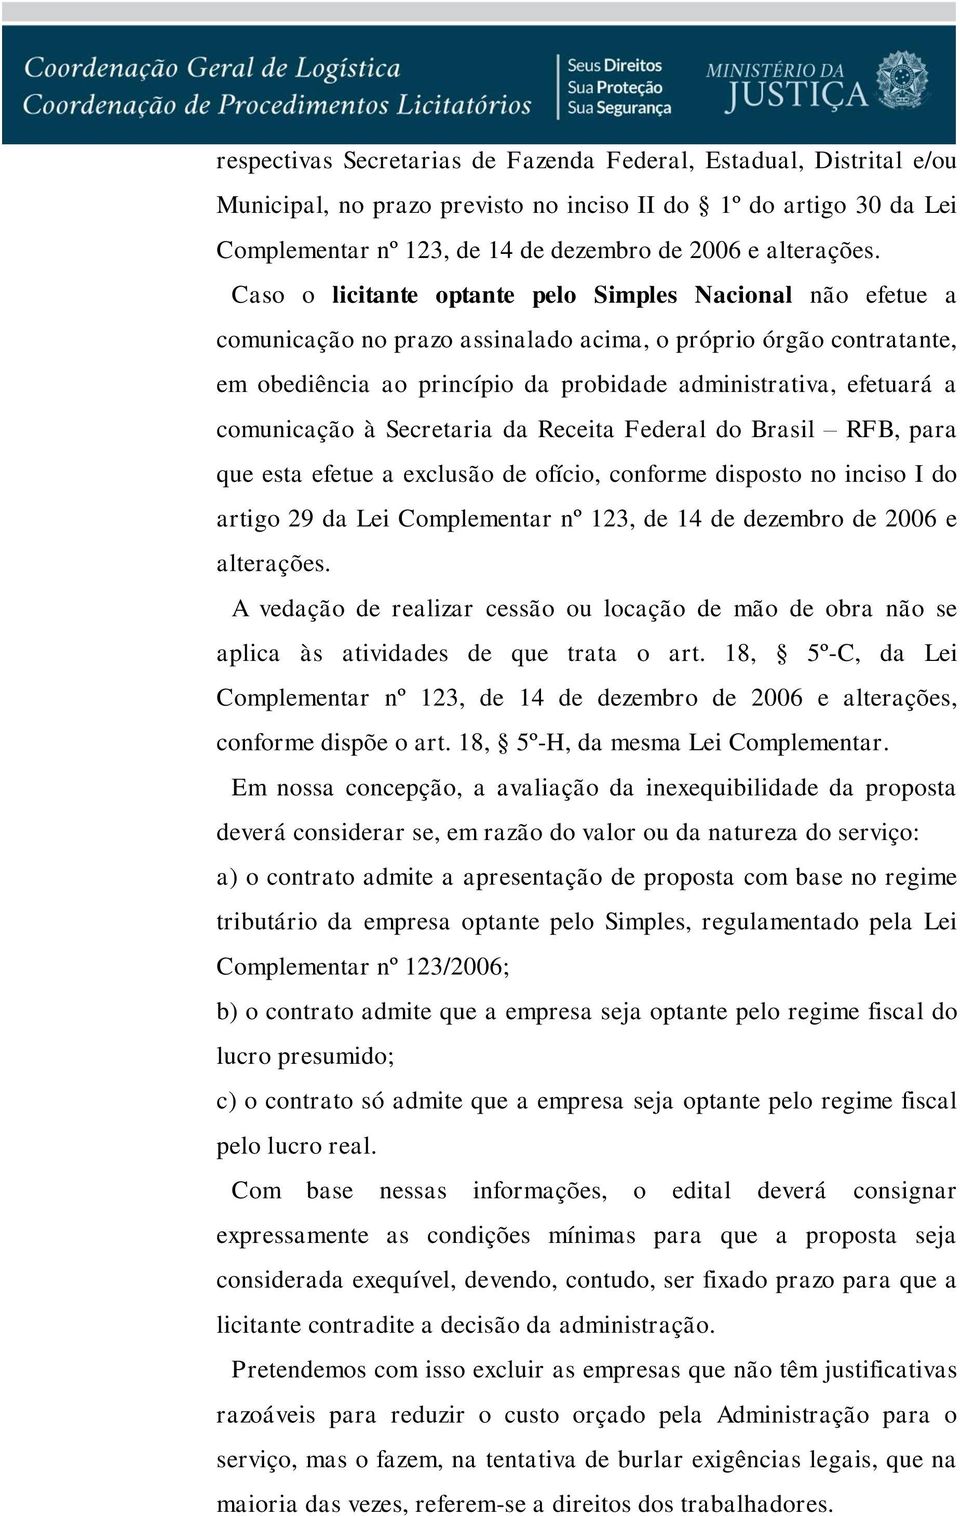 comunicação à Secretaria da Receita Federal do Brasil RFB, para que esta efetue a exclusão de ofício, conforme disposto no inciso I do artigo 29 da Lei Complementar nº 123, de 14 de dezembro de 2006